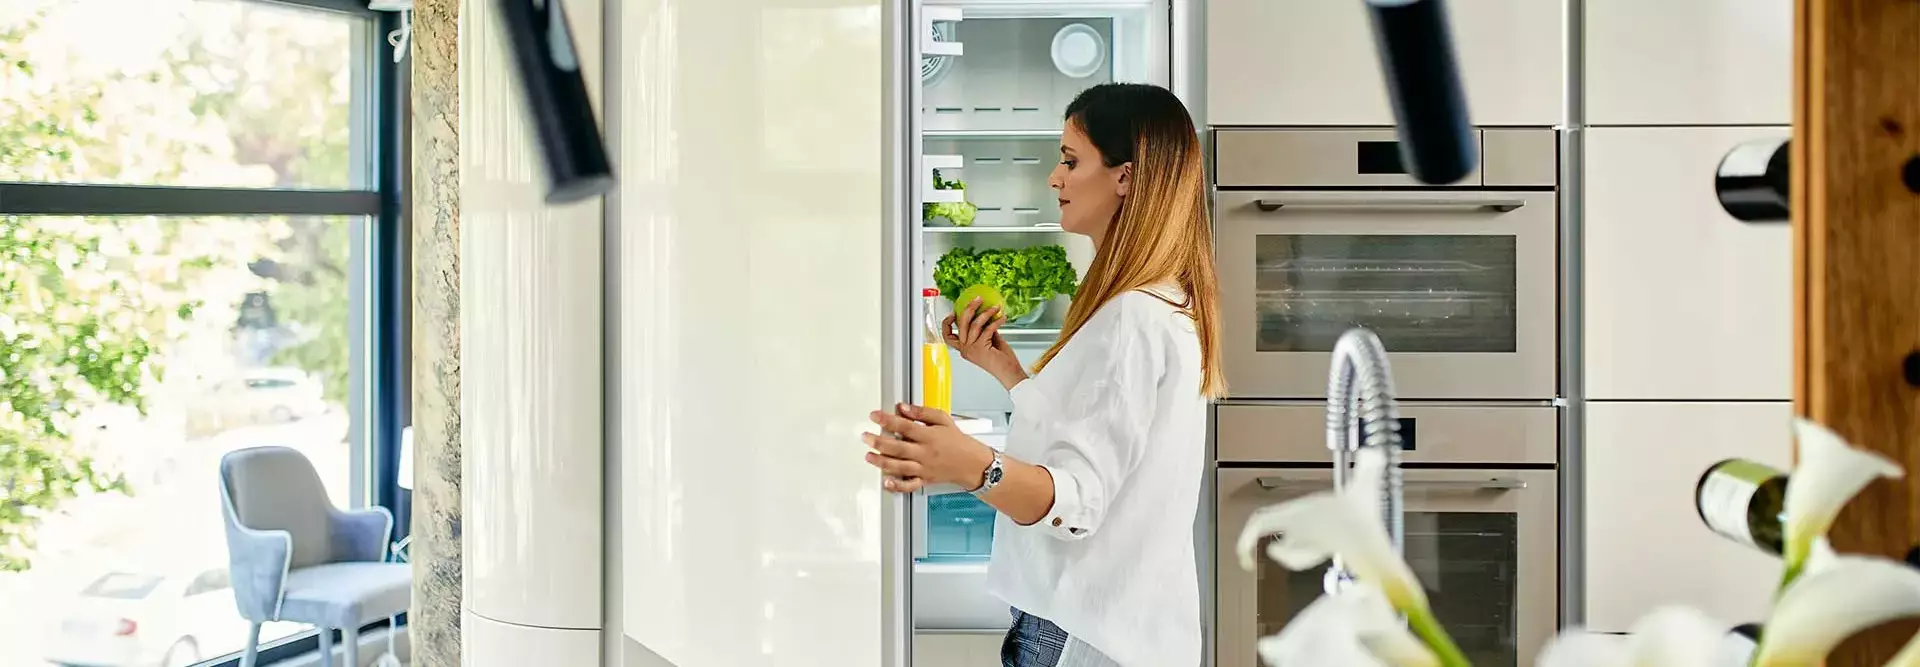 Mulher na cozinha abre o frigorifico para tirar uma maçã